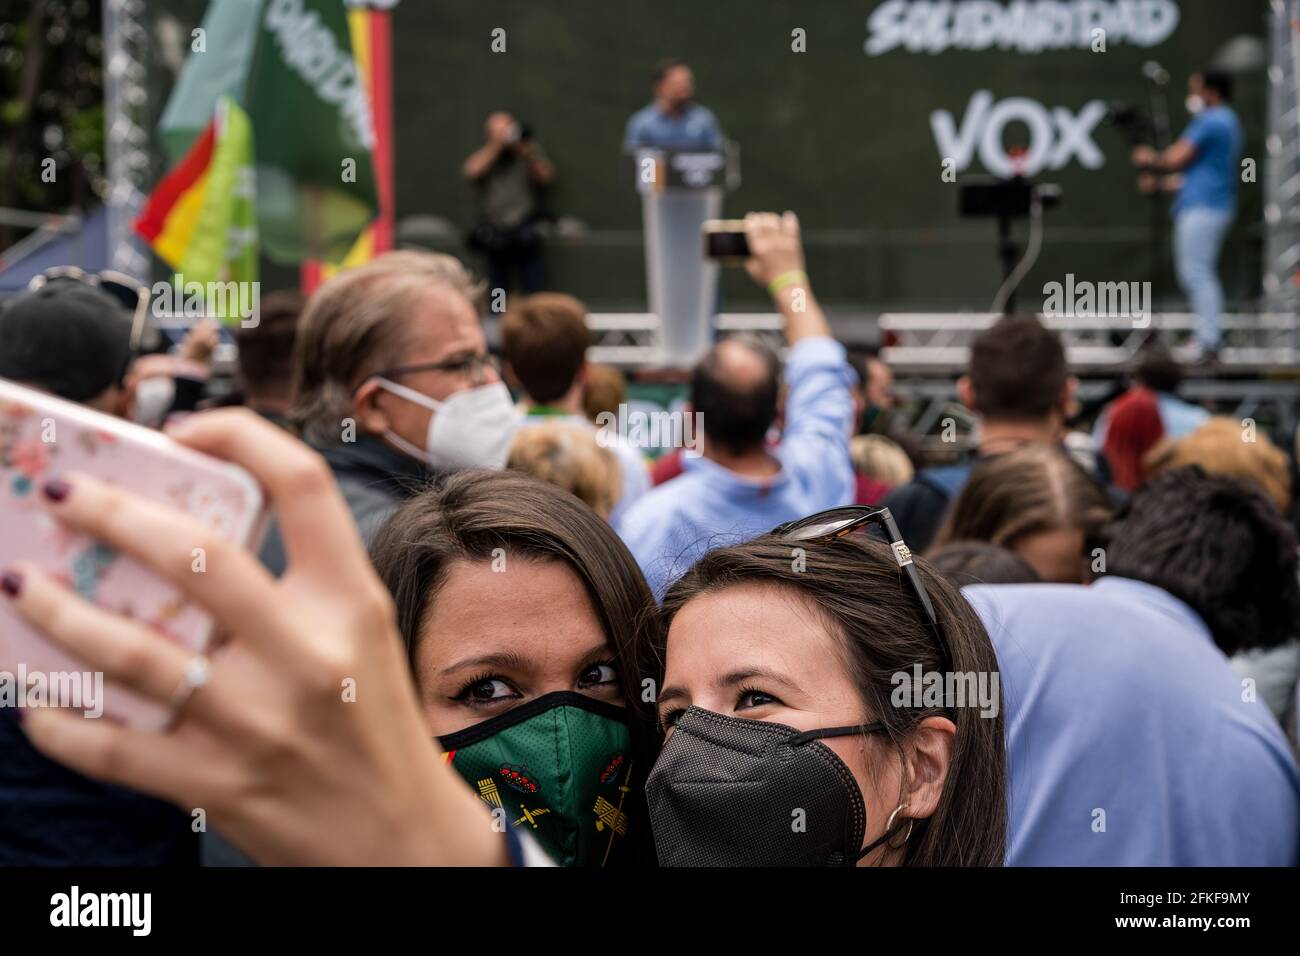 Les femmes prennent un selfie tout en écoutant Santiago Abascal sur la Plaza Conde de Casal pendant le rallye VOX.dans le cadre de la Journée internationale du travail du 1er mai, le parti d'extrême-droite espagnol VOX lance le syndicat "Solidaridad". Avec des discours anti-communistes, anti-écologiques, anti-illégaux, anti-féministes et ultra-nationalistes, Santiago Abascal, président de VOX, Rocio Monasterio, candidat aux élections de la Communauté de Madrid, et Rodrigo Alonso, secrétaire général du syndicat Solidaridad ont participé à la réunion sur la Plaza de Comte Casal. La loi a lieu quelques-uns Banque D'Images